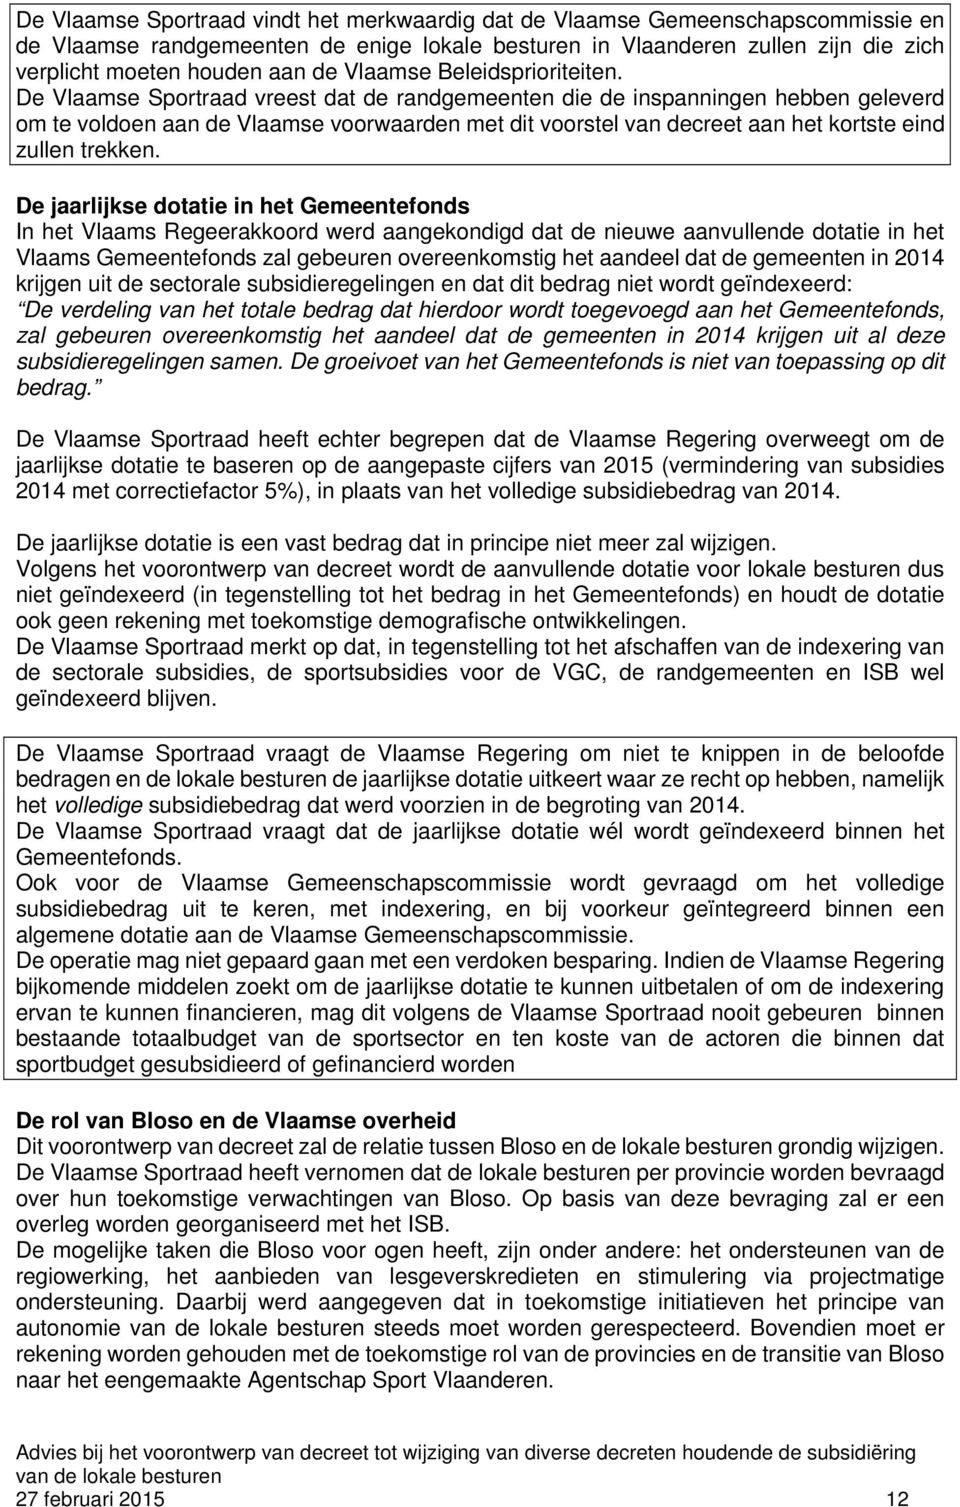 De Vlaamse Sportraad vreest dat de randgemeenten die de inspanningen hebben geleverd om te voldoen aan de Vlaamse voorwaarden met dit voorstel van decreet aan het kortste eind zullen trekken.